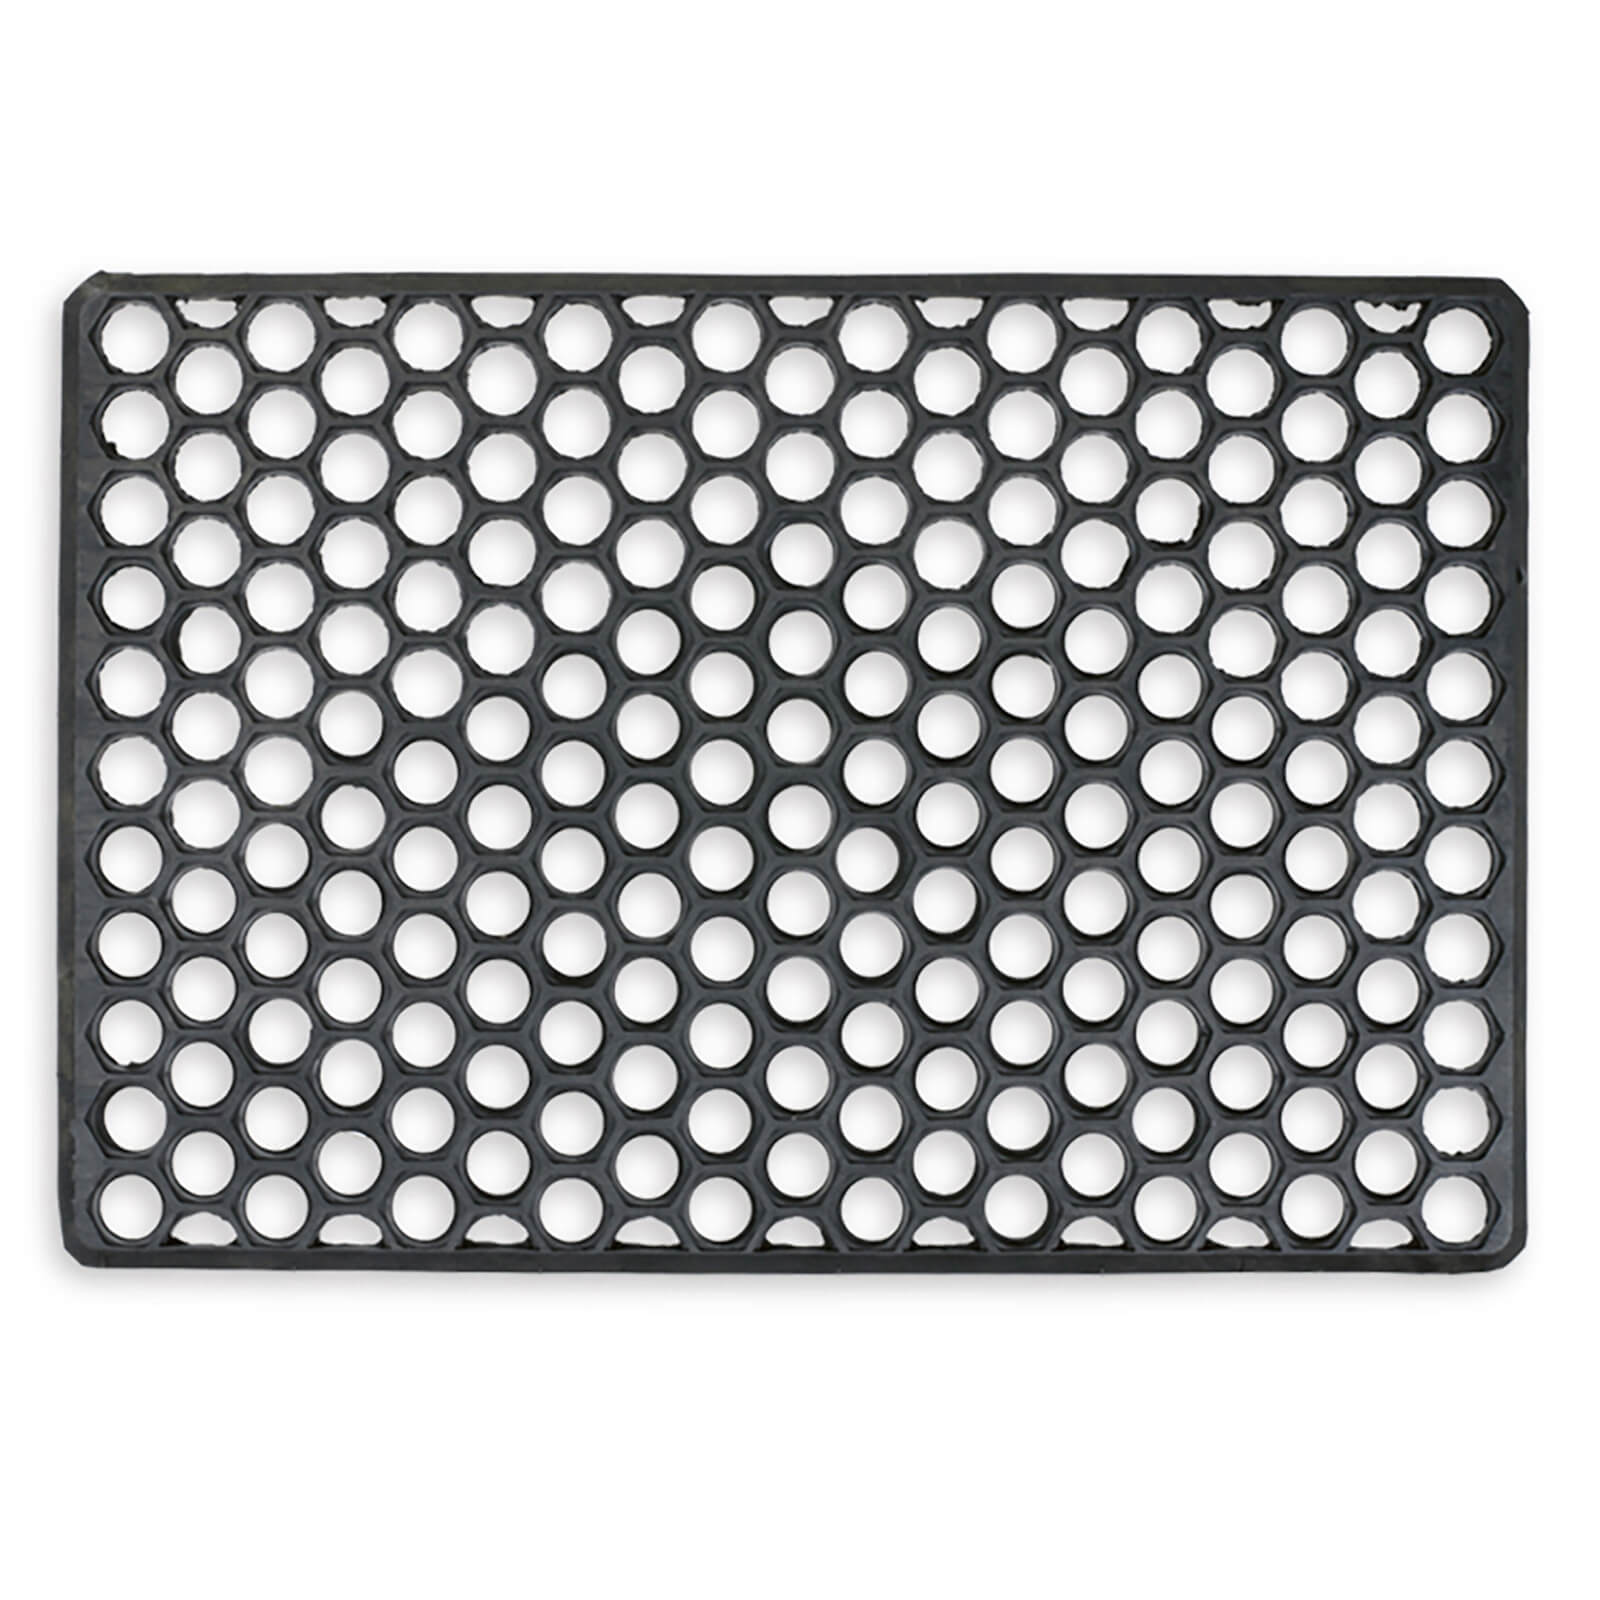 Photo of Rubber Grid Doormat -black